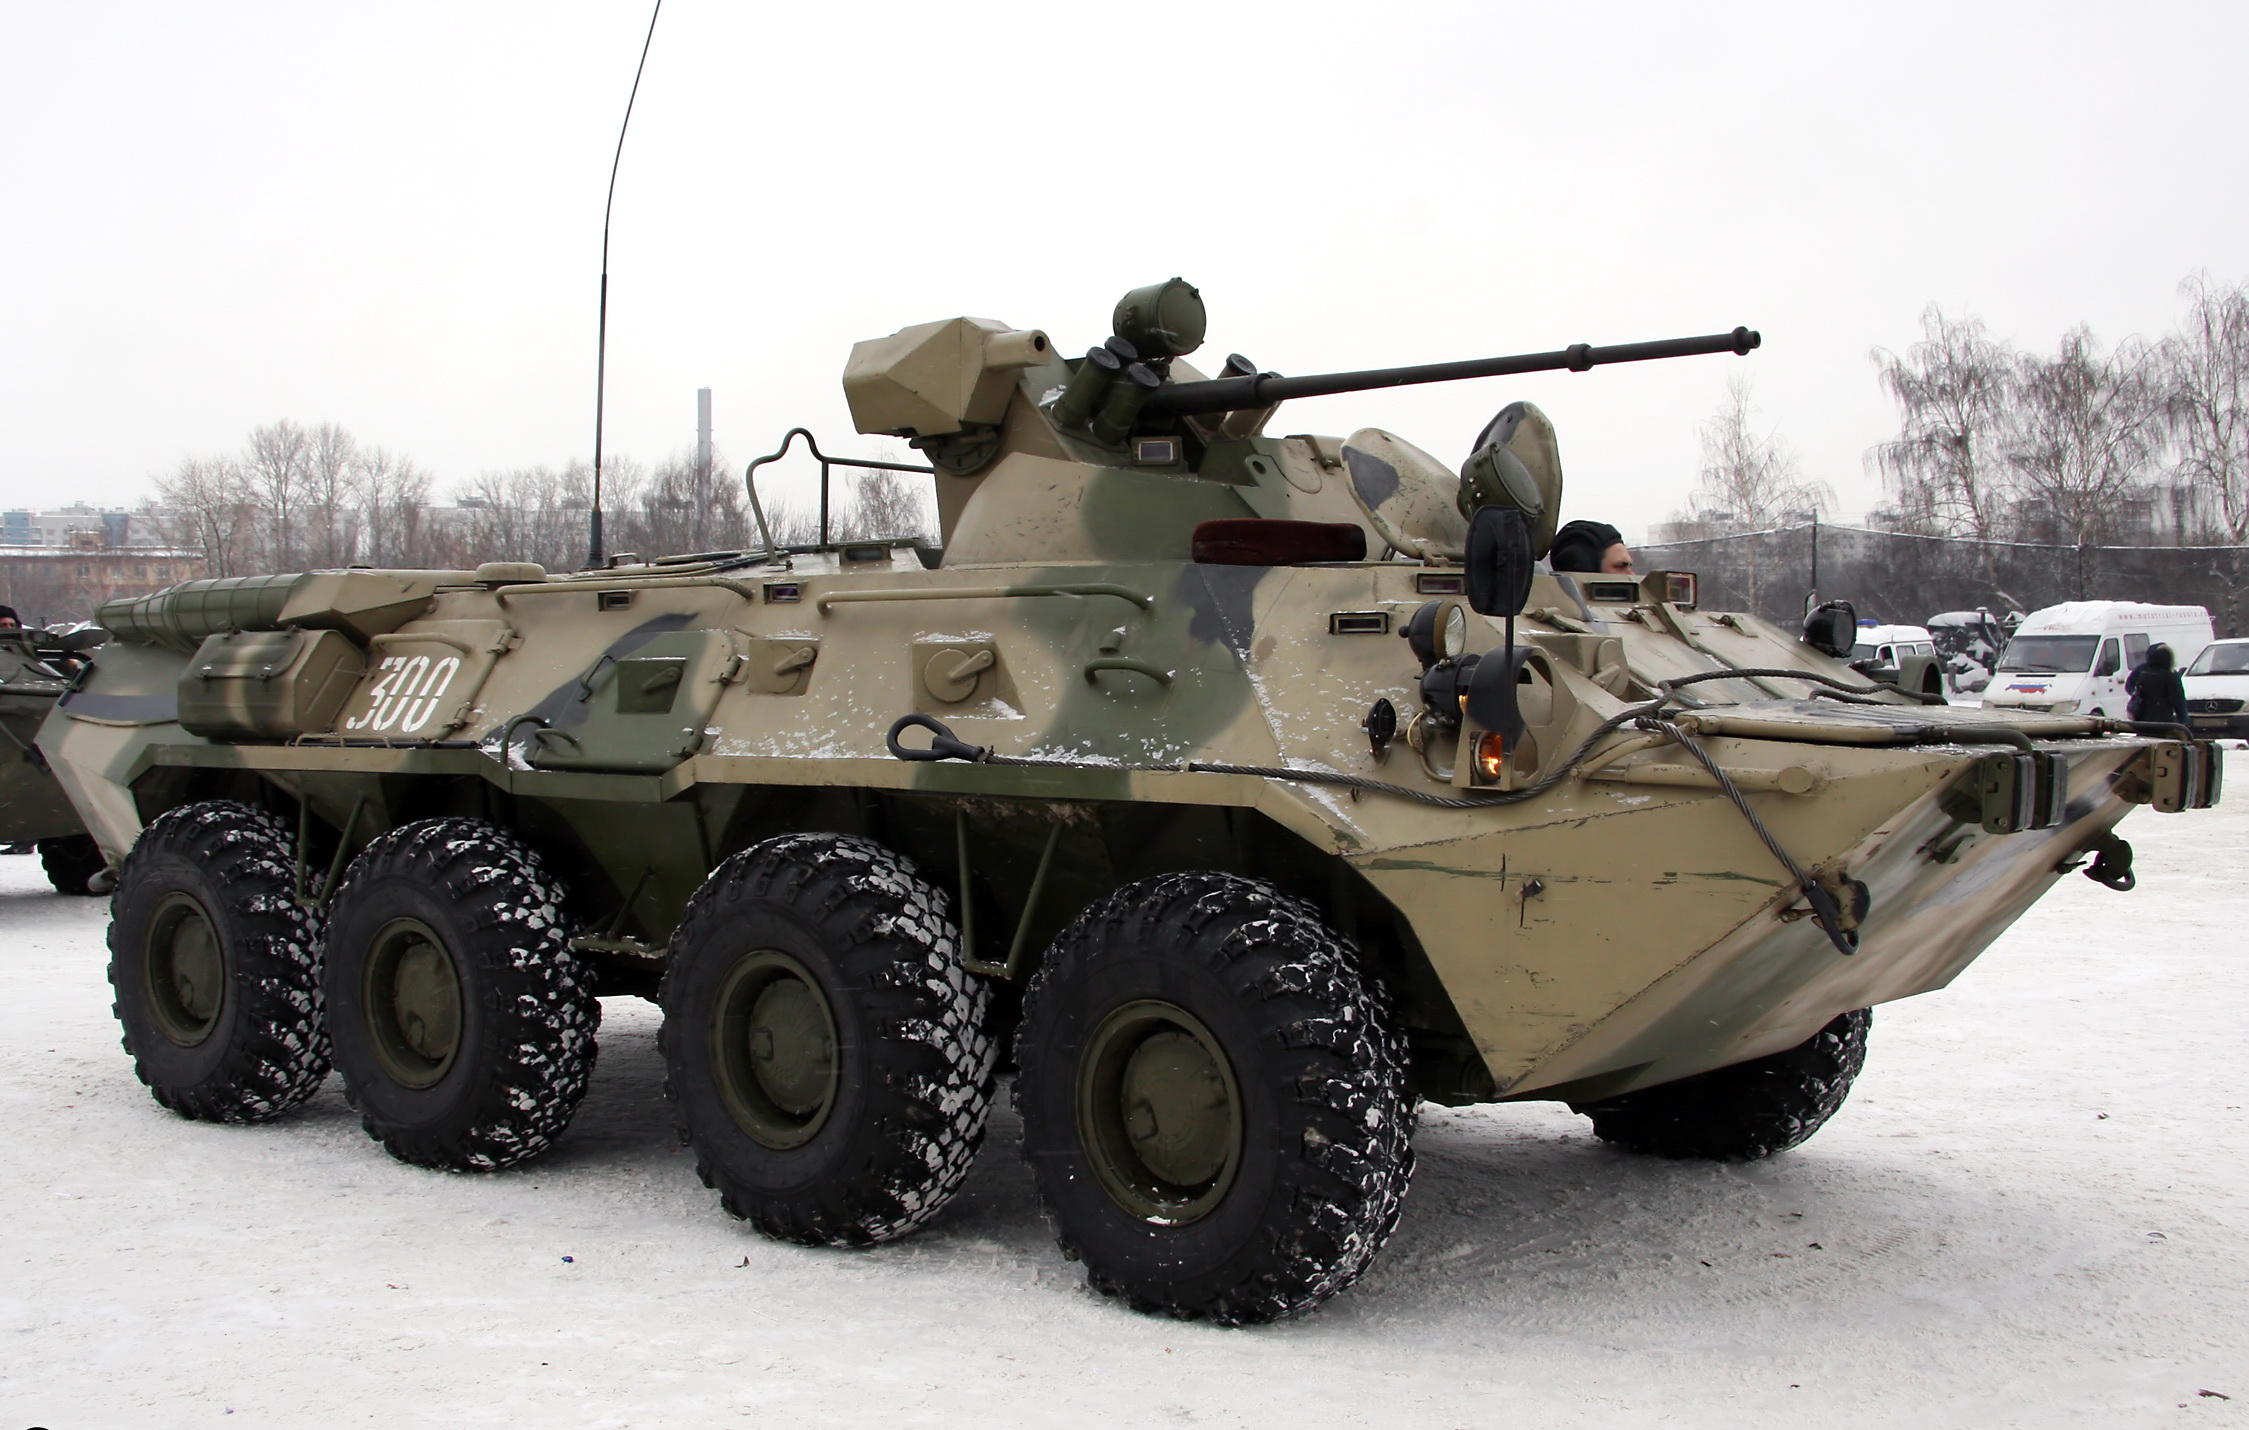 BTR-80 Backgrounds, Compatible - PC, Mobile, Gadgets| 2249x1430 px